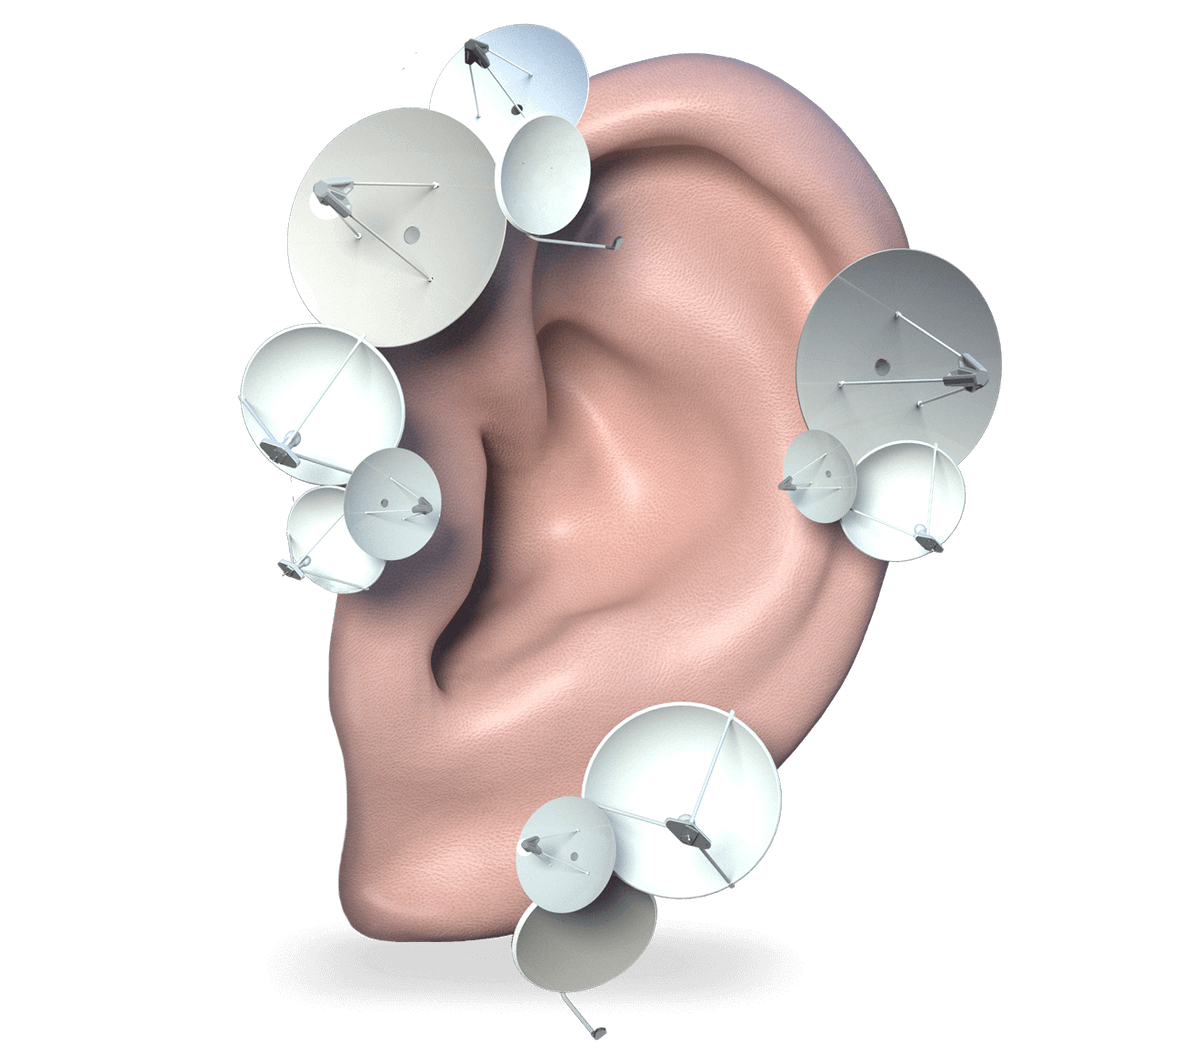 Как получить компенсацию за слуховой аппарат